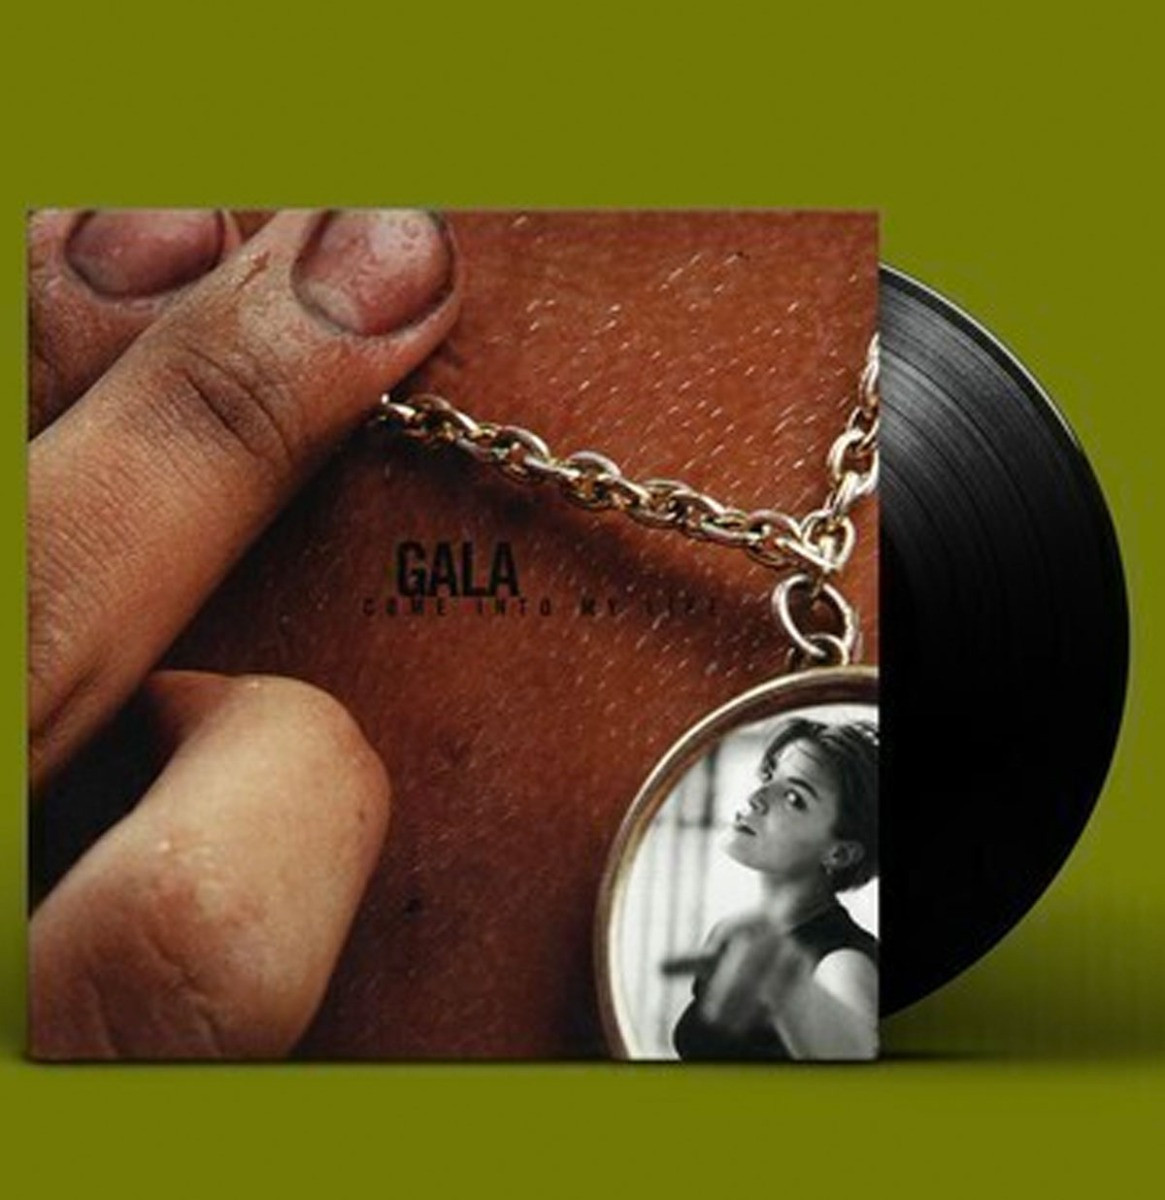 Gala - Come Into My Life LP ZEER GELIMITEERD